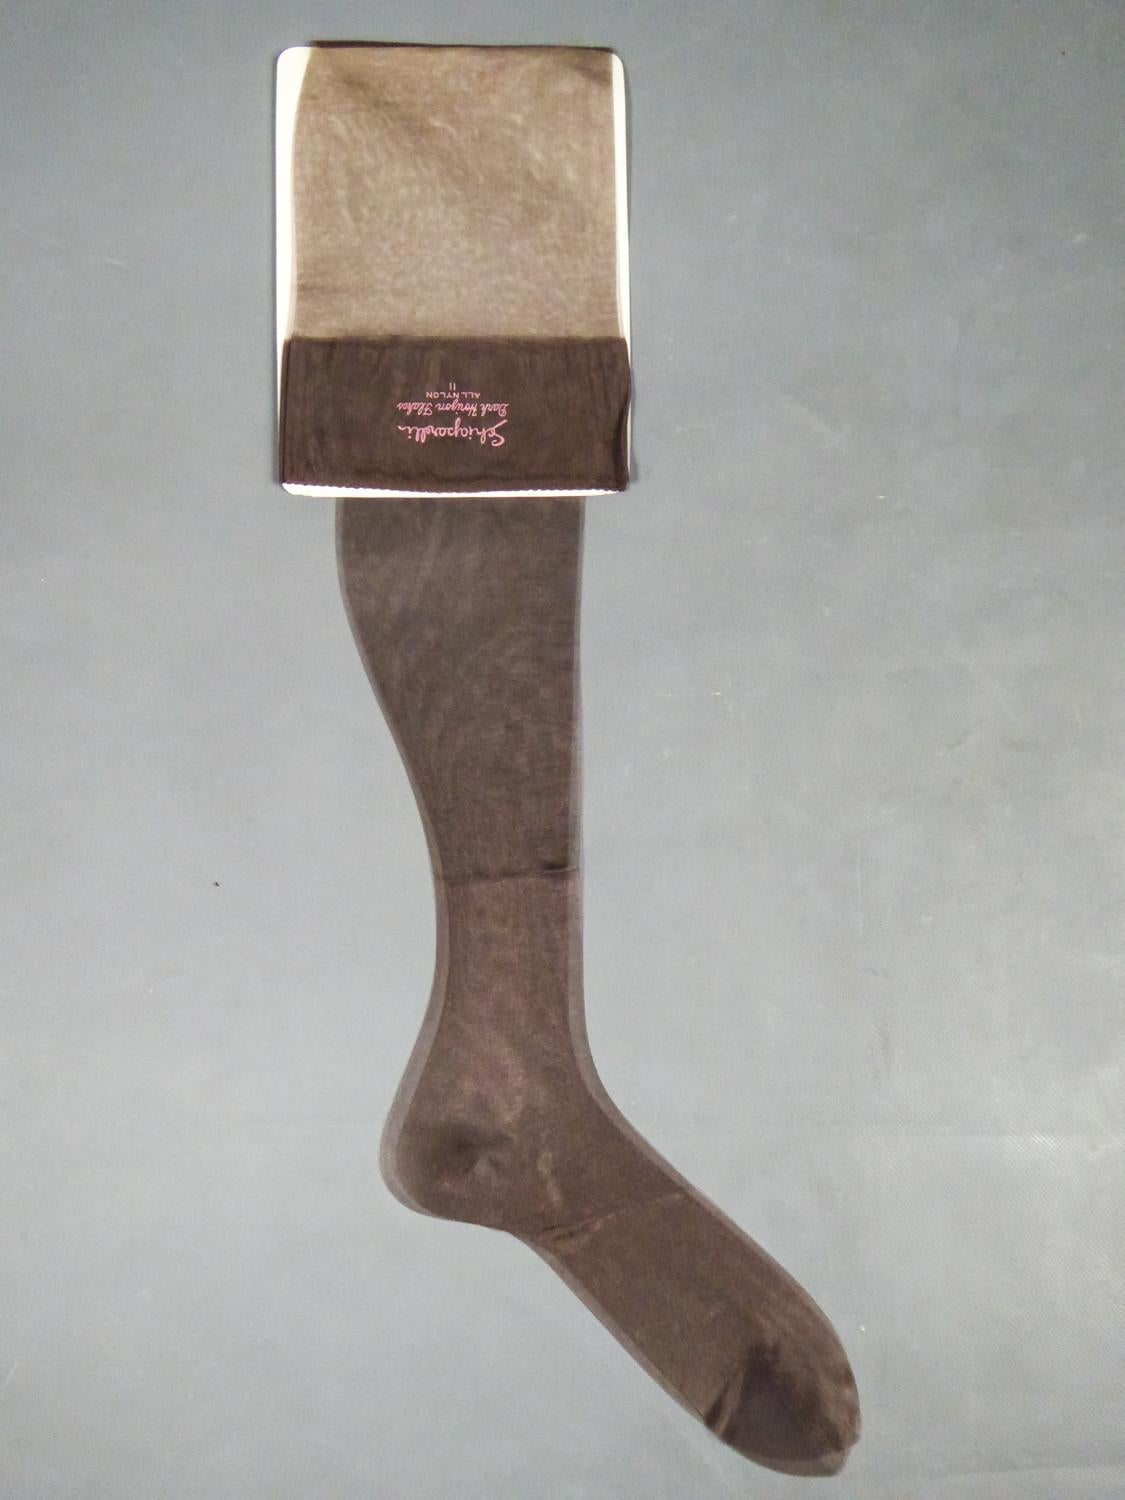 Ca. 1958
Vereinigte Staaten

Paar Strümpfe von Elsa Schiaparelli in Originalverpackung, neuwertig, Sammlerstück aus den späten 1950er Jahren in den Vereinigten Staaten. Ein Paar braune Nylonstrümpfe mit der berühmten Schocking Pink Grafik, die auf